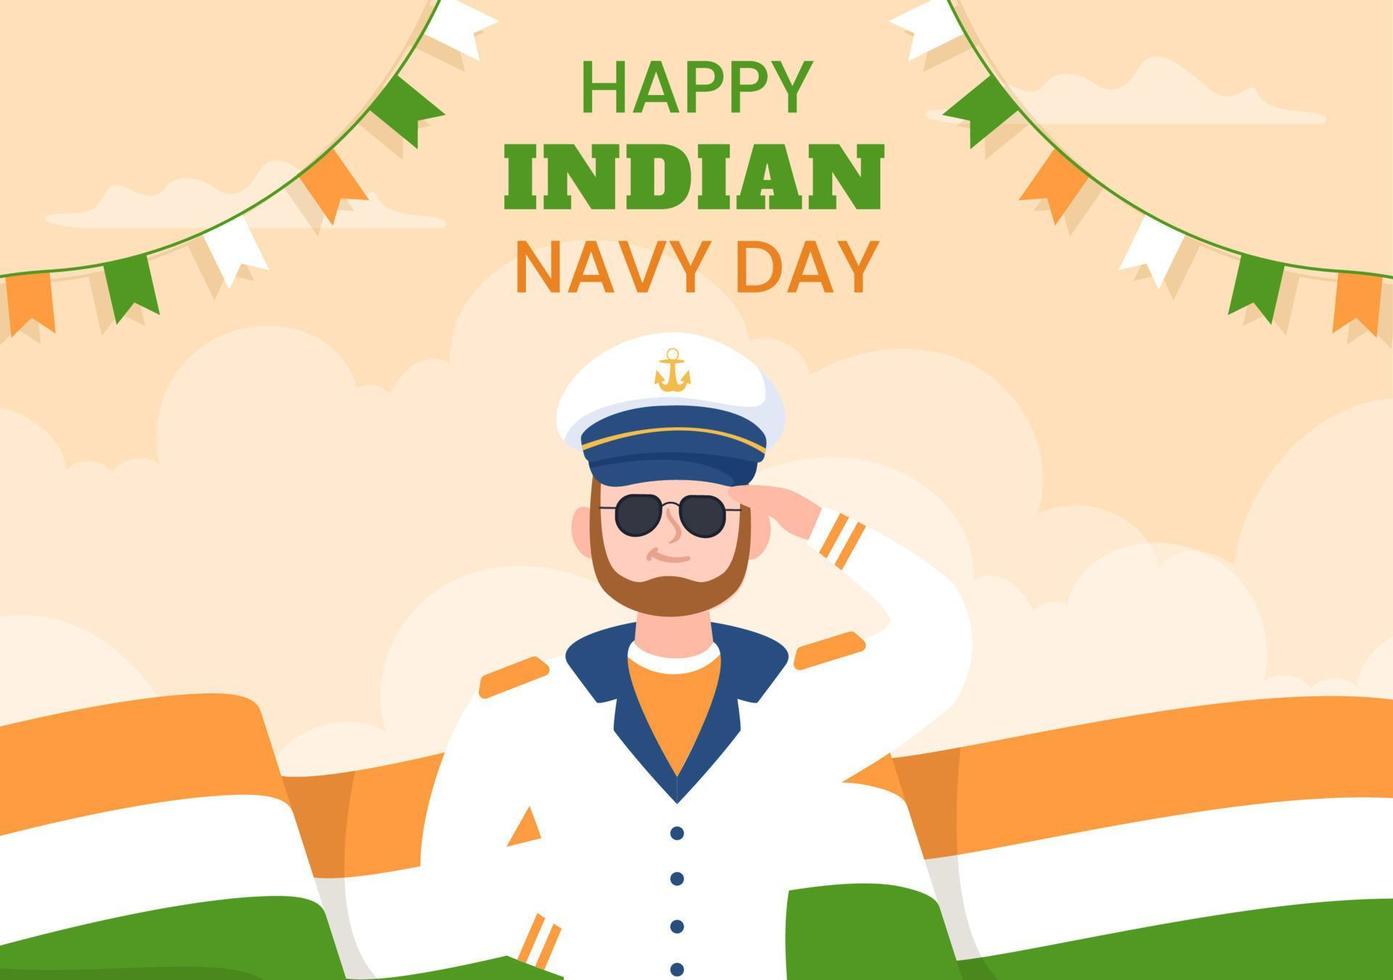 plantilla de fondo del día de la marina india dibujado a mano ilustración plana de dibujos animados vector